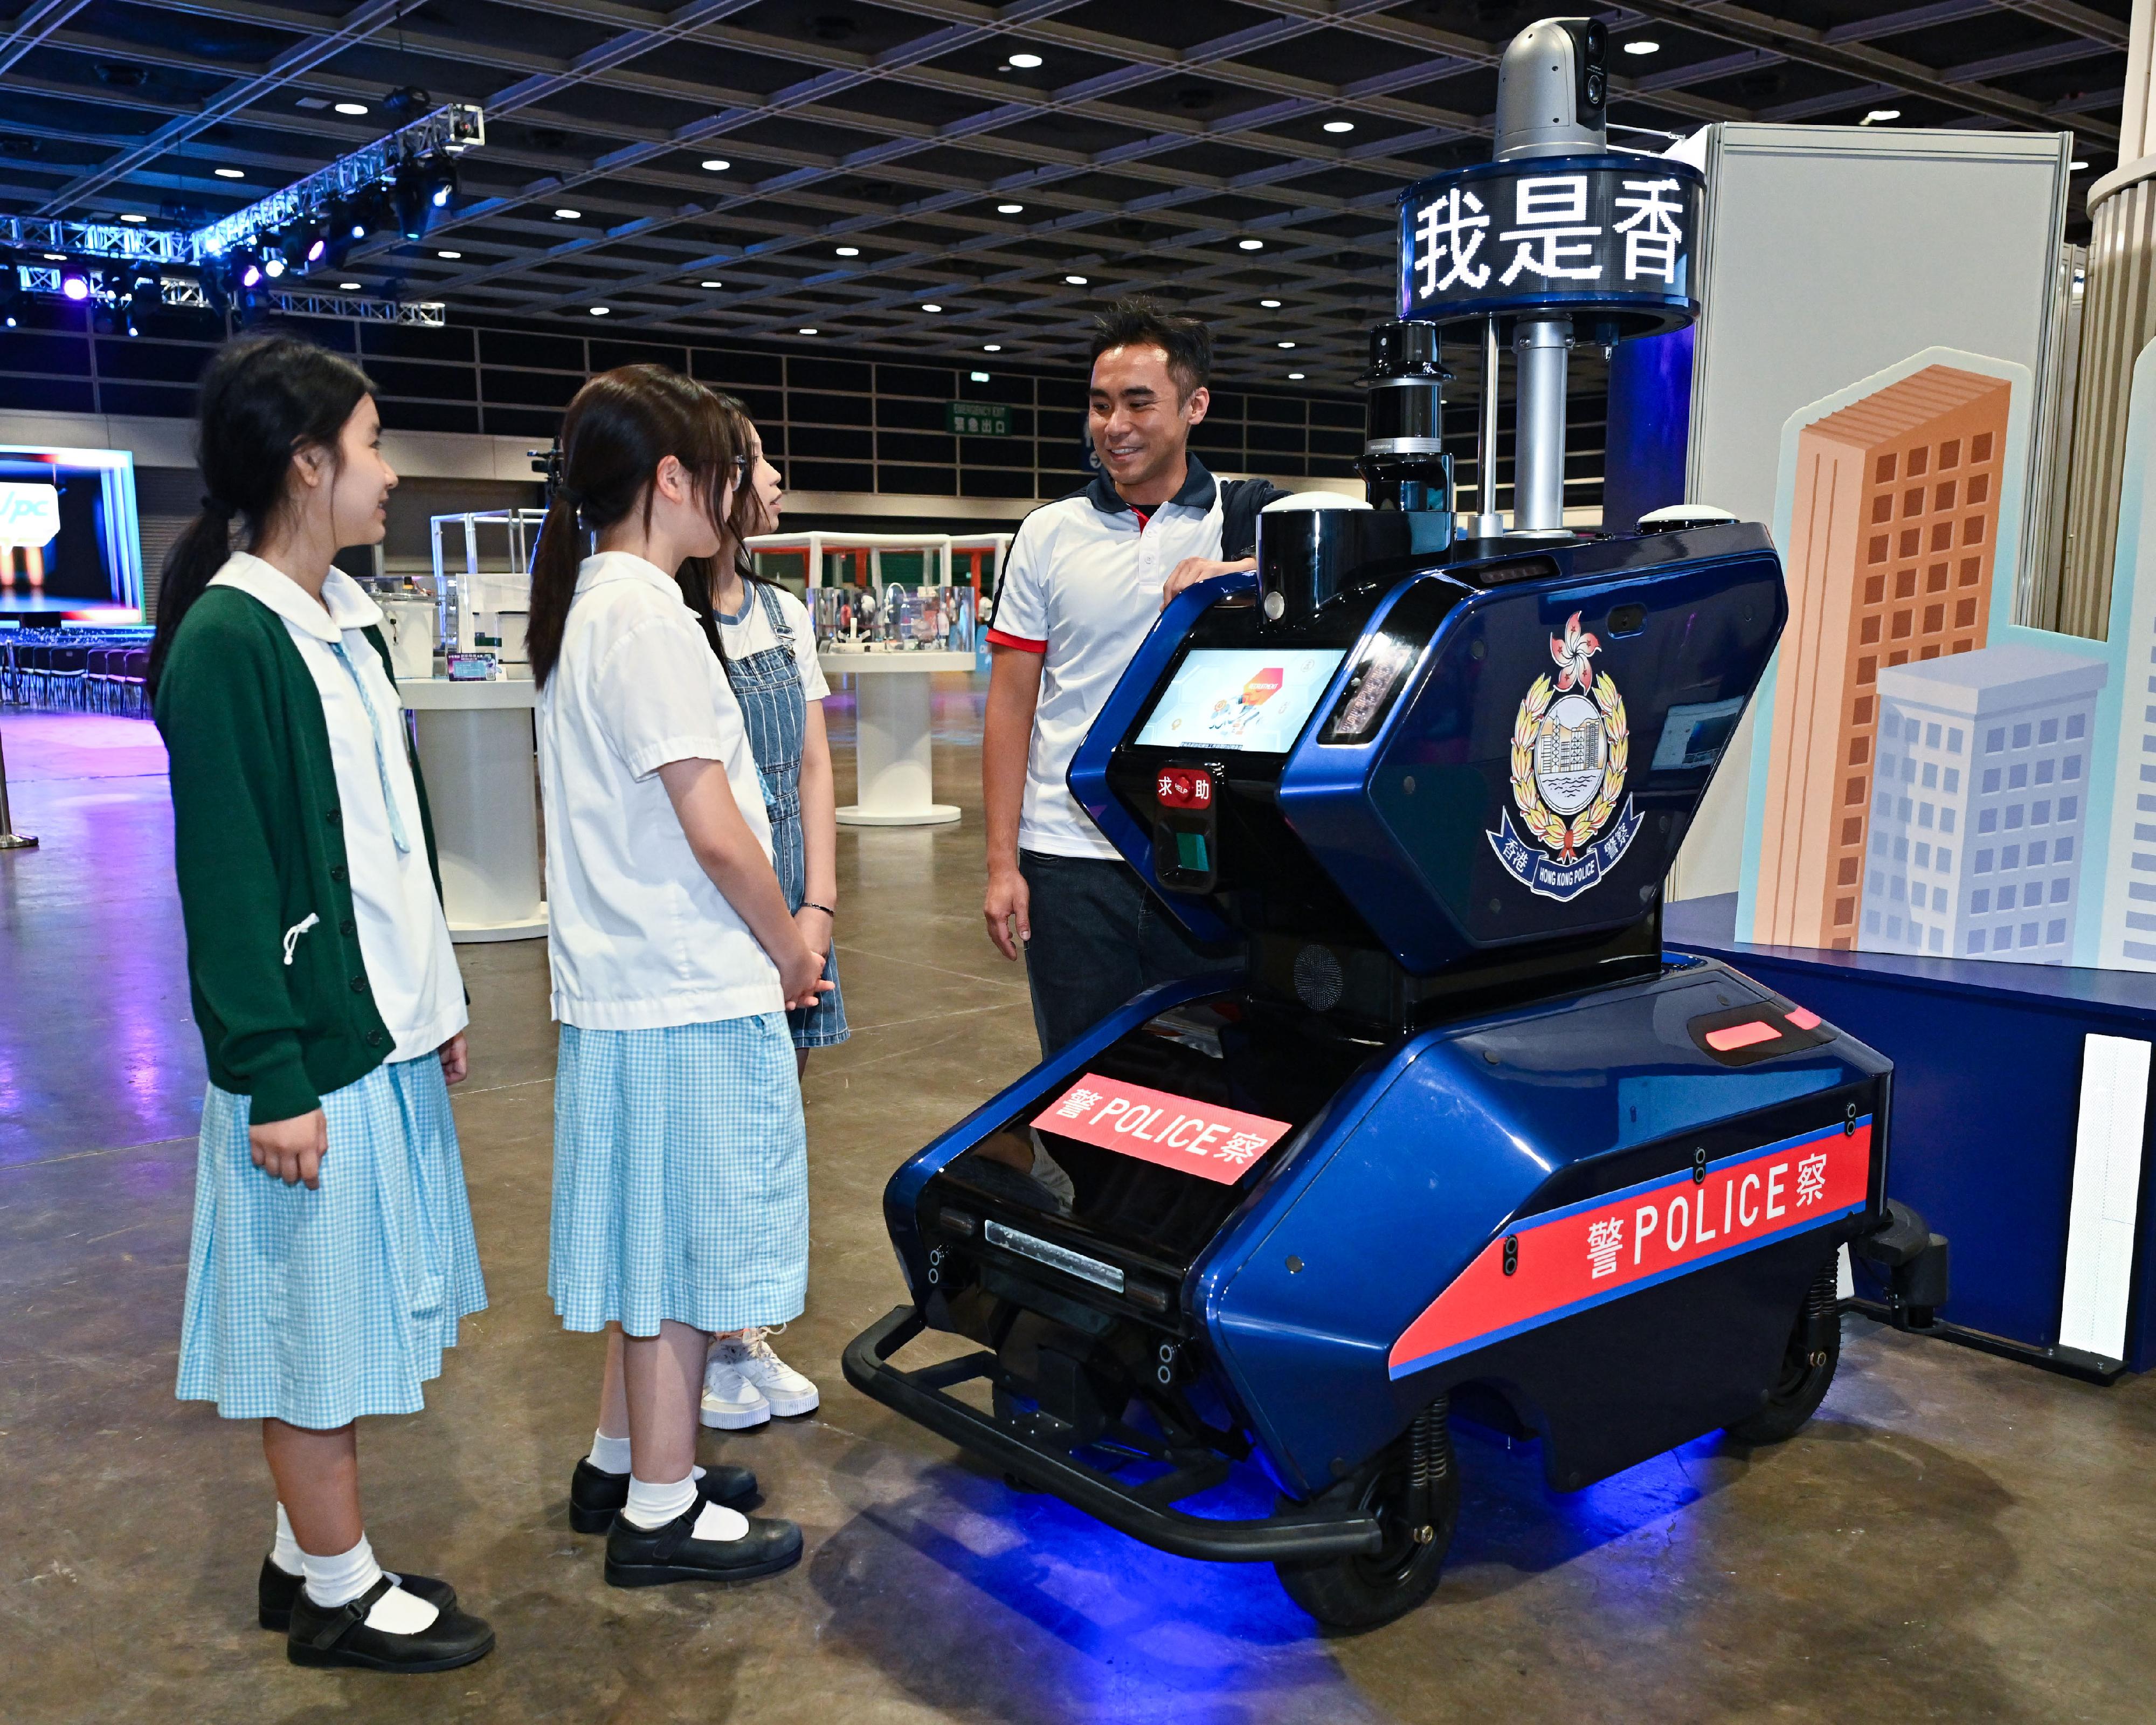 少年警讯主办的「少年警讯创新科技大赛 2023-24」今日（五月十一日）在香港会议展览中心举行颁奖典礼，同场亦举行创科嘉年华，当中巡逻机械人在数码警政展示区向参加者展示出如何运用科技提升警队工作效能。